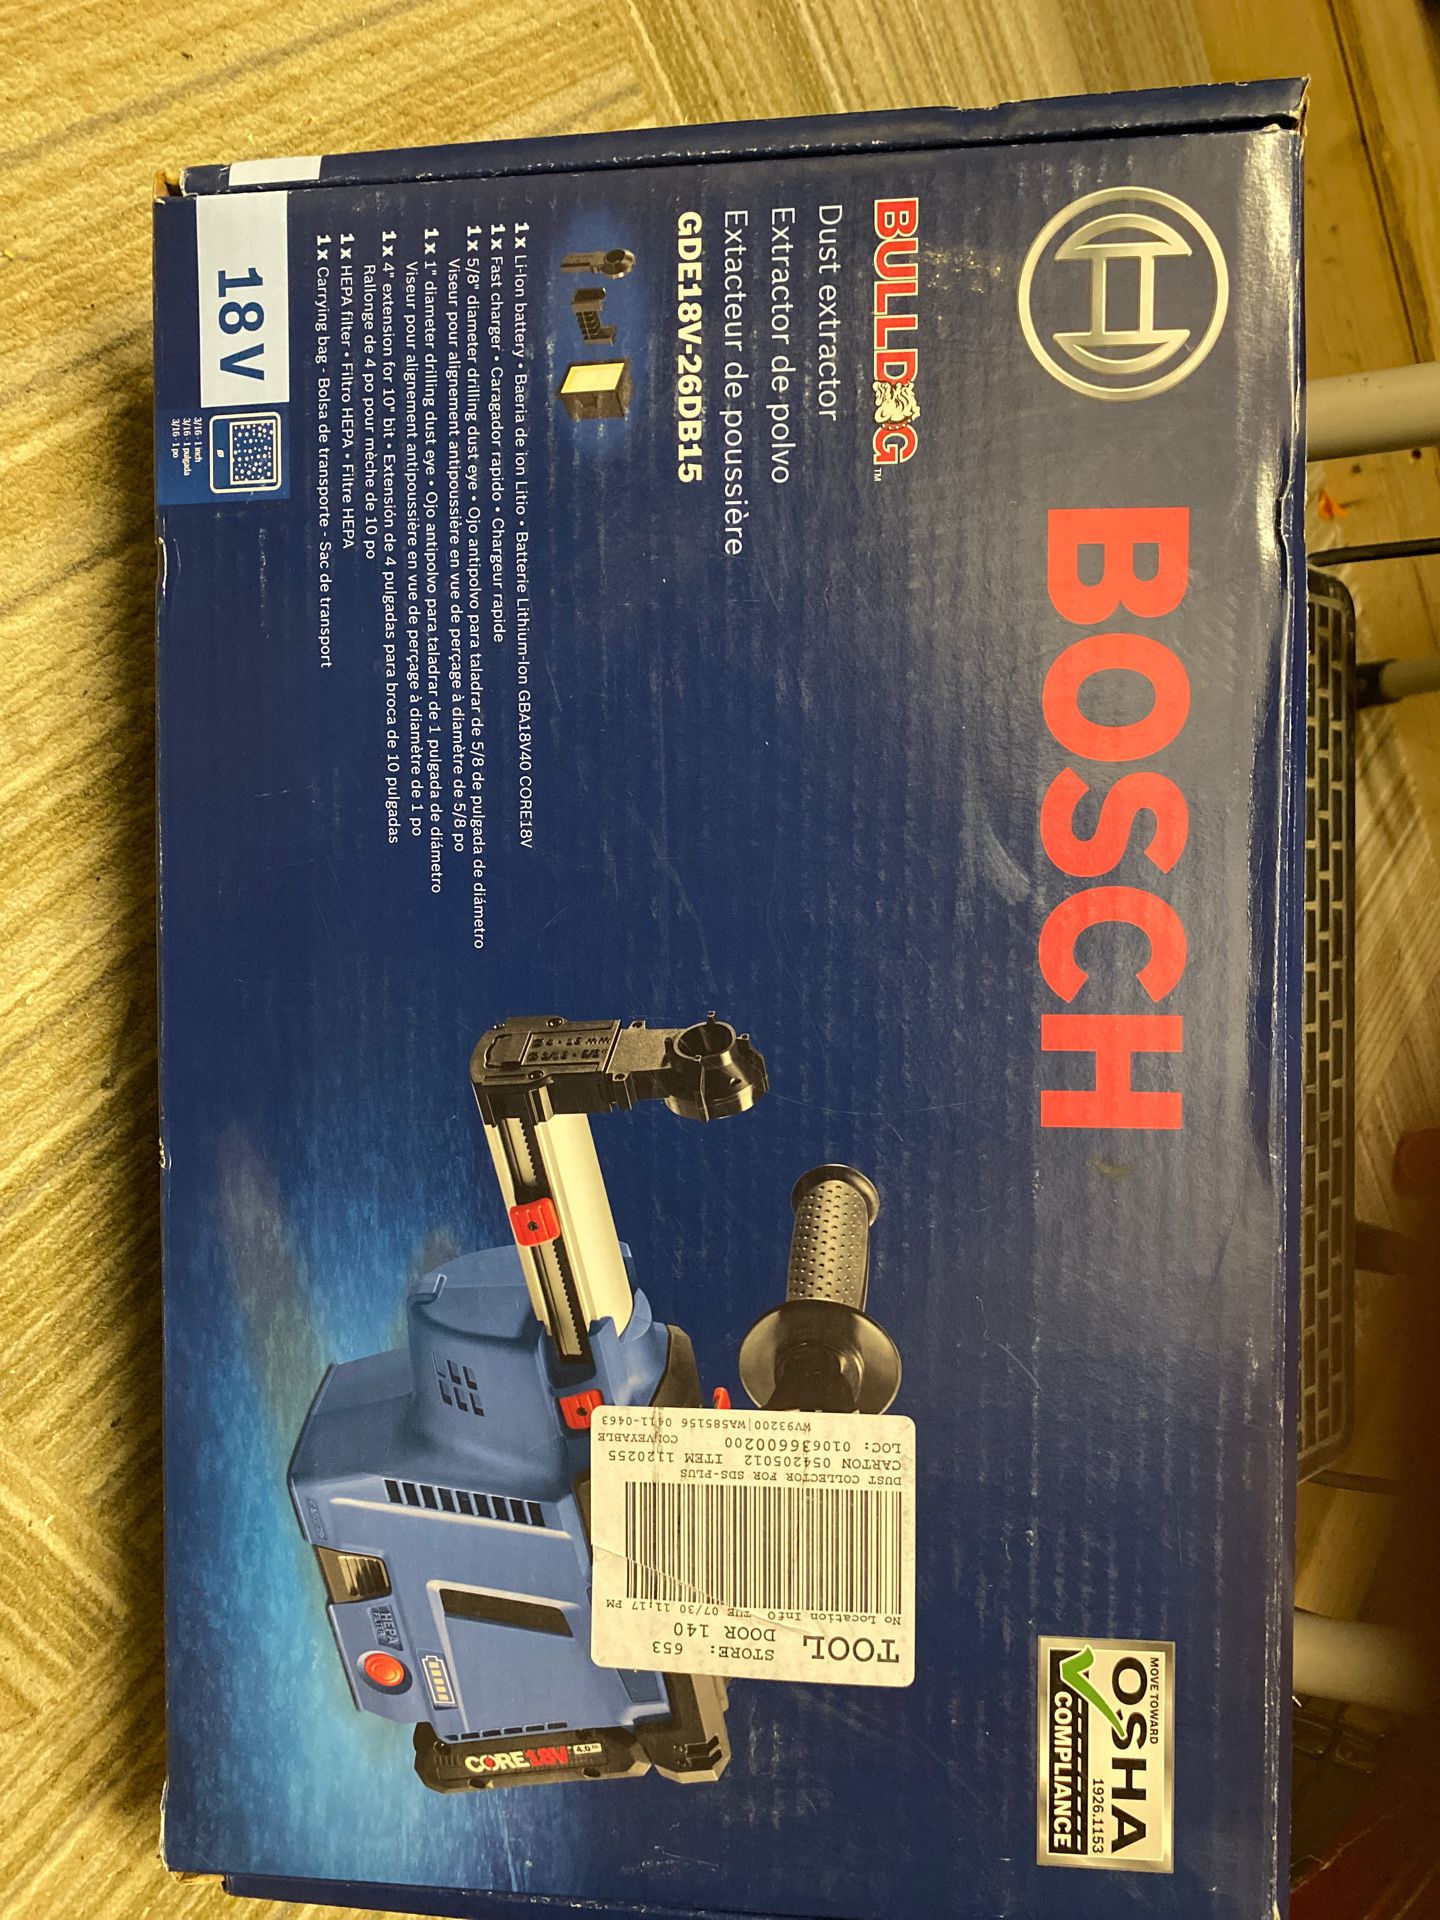 Bosch dust extractor